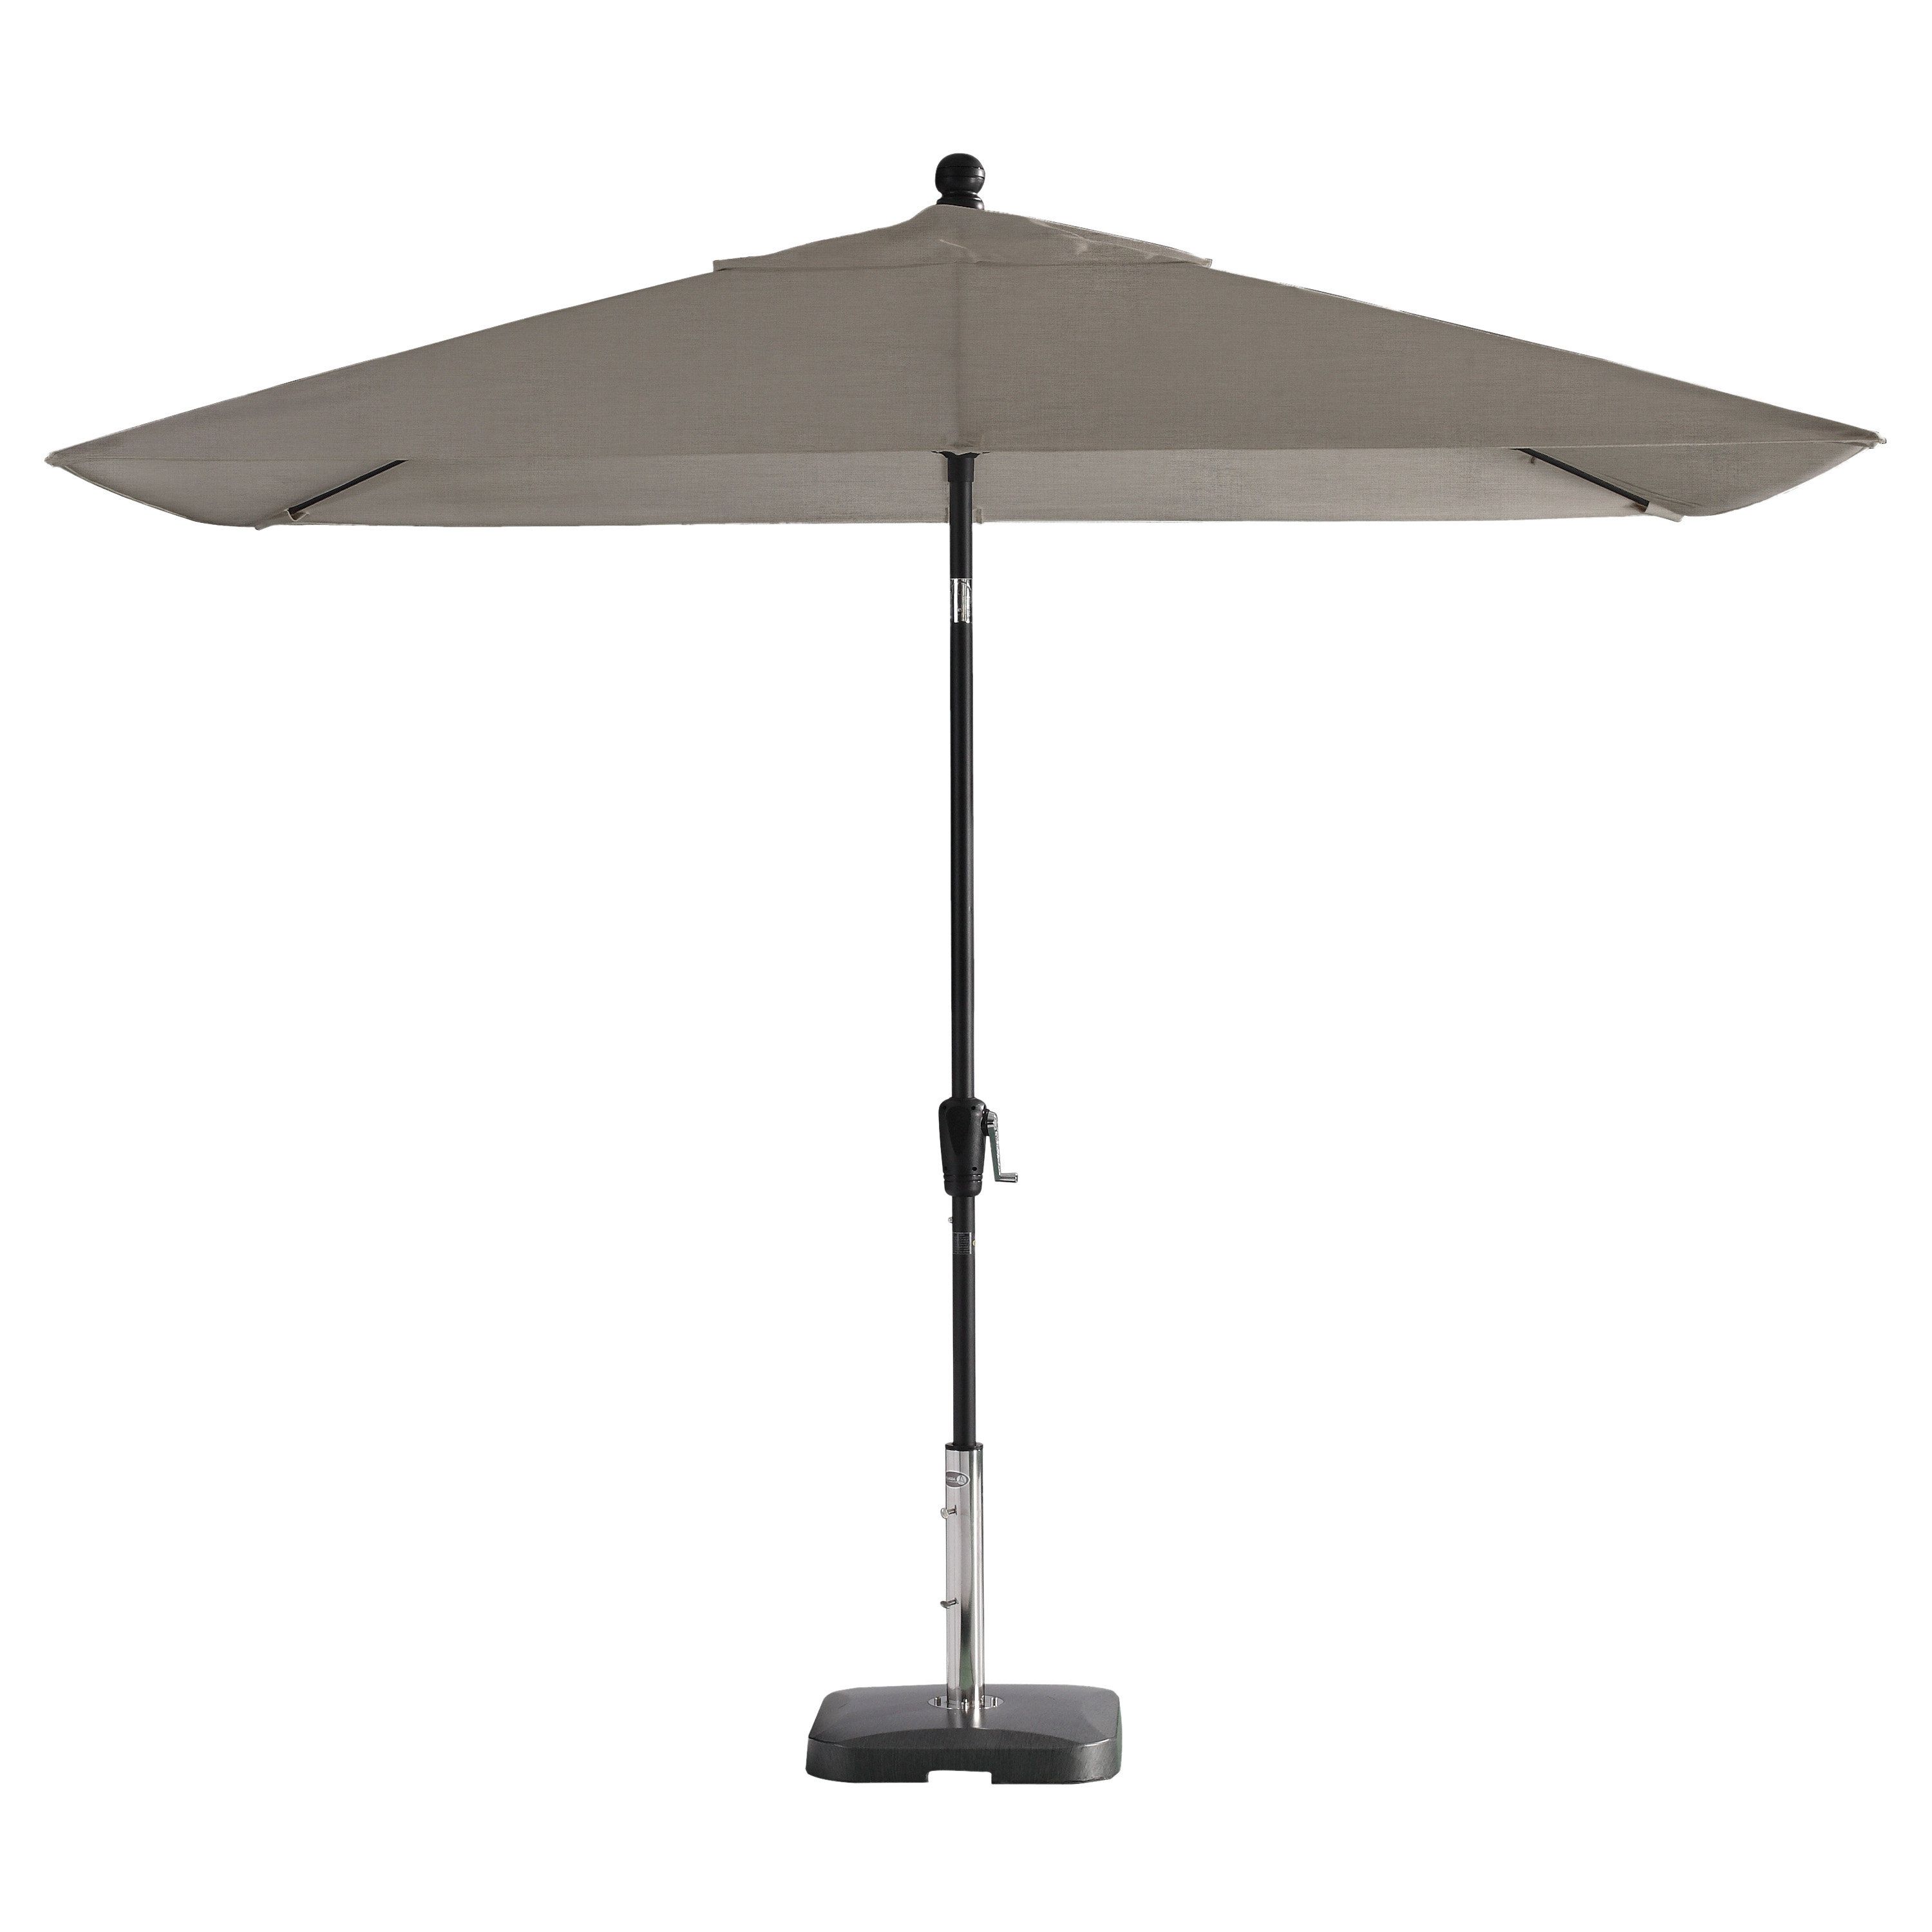 Sherlyn Rectangular Market Umbrellas Throughout Preferred Wiechmann Push Tilt 9' X 7' Rectangular Market Sunbrella Umbrella (View 8 of 20)